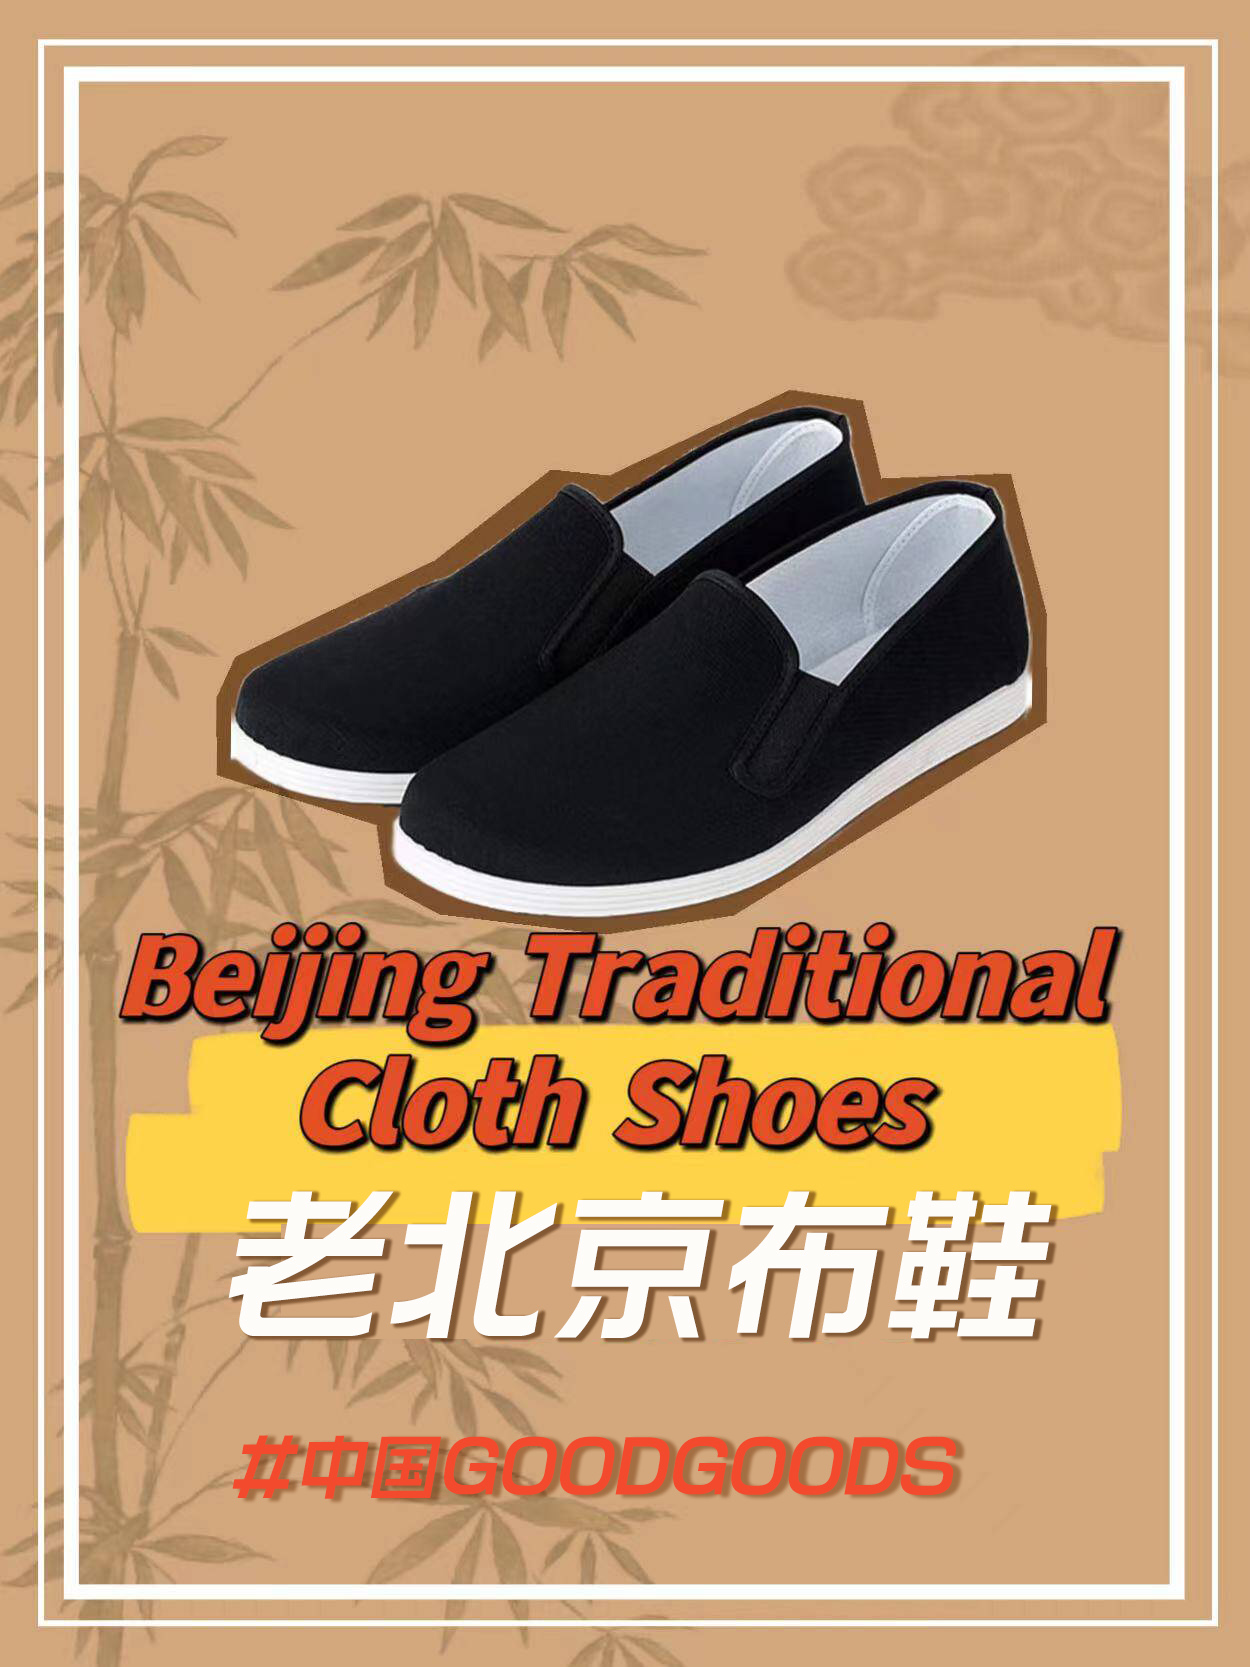 【中国GOODGOODS】3000年以上の歴史を持つ「老北京布鞋」